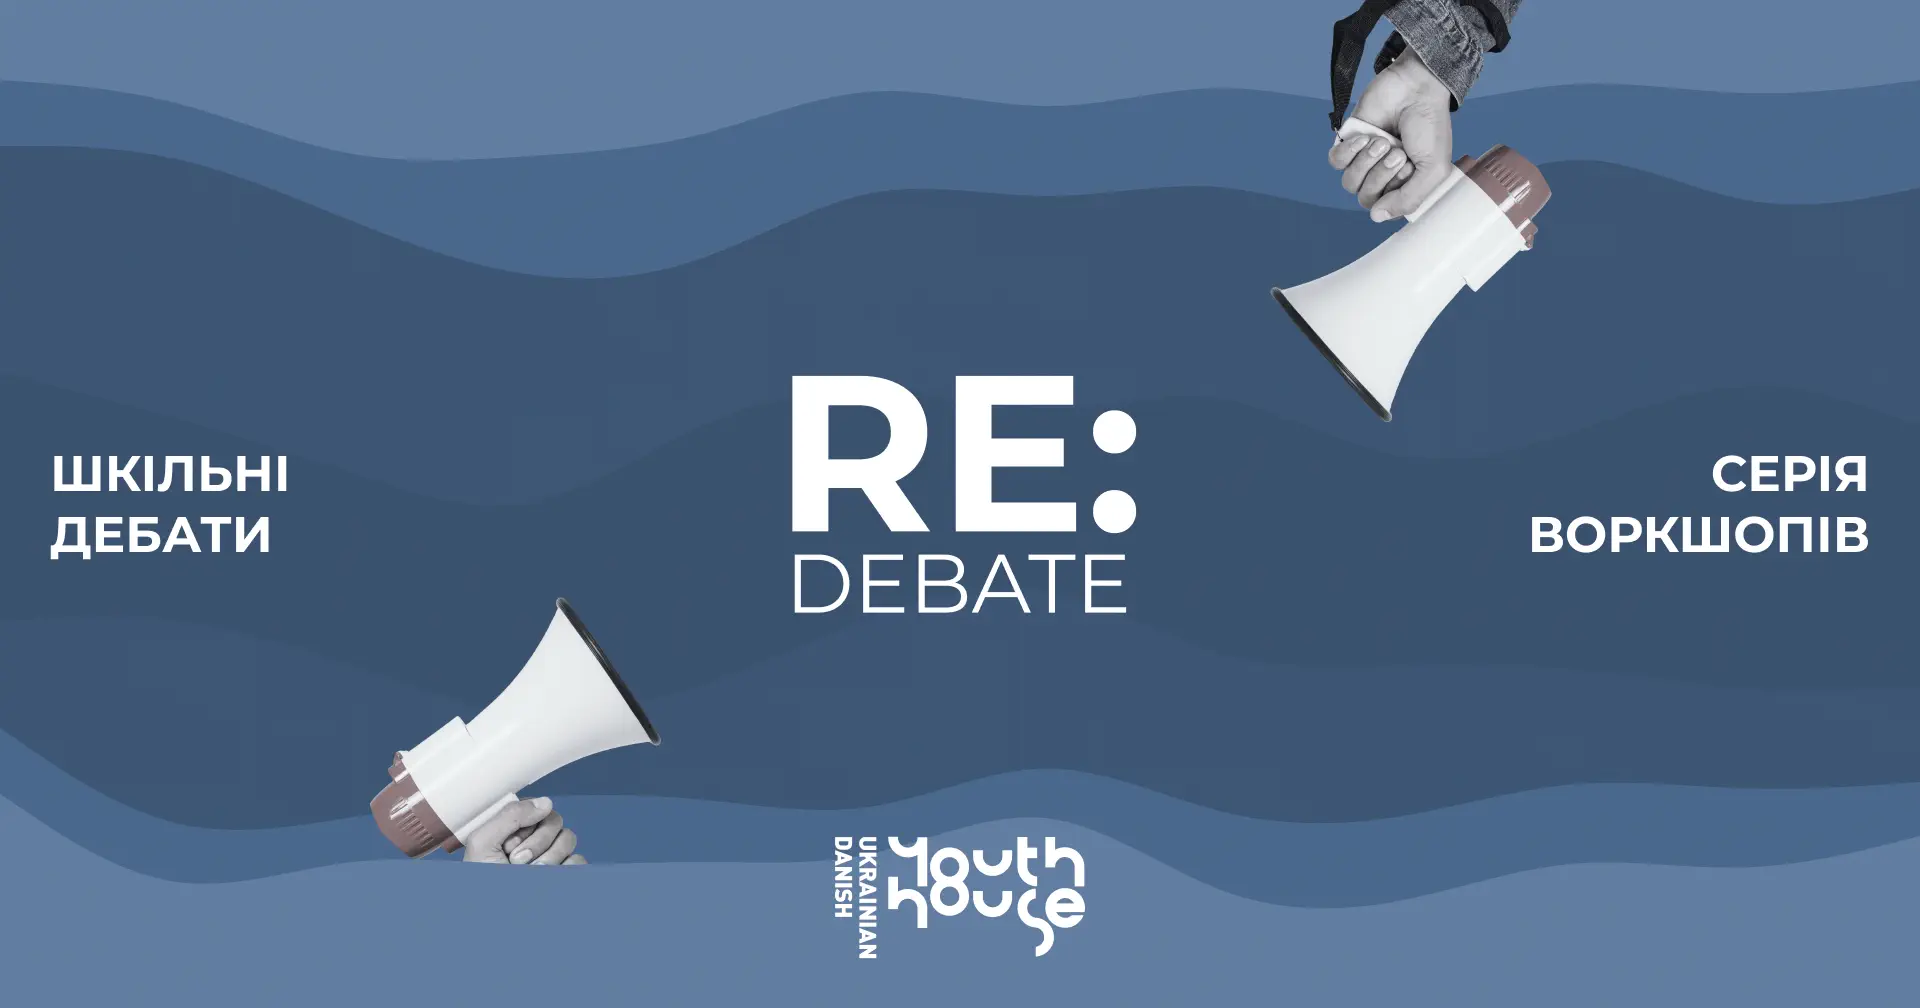 Re:debate: відкрито реєстрацію на серію дебатних воркшопів для школярів